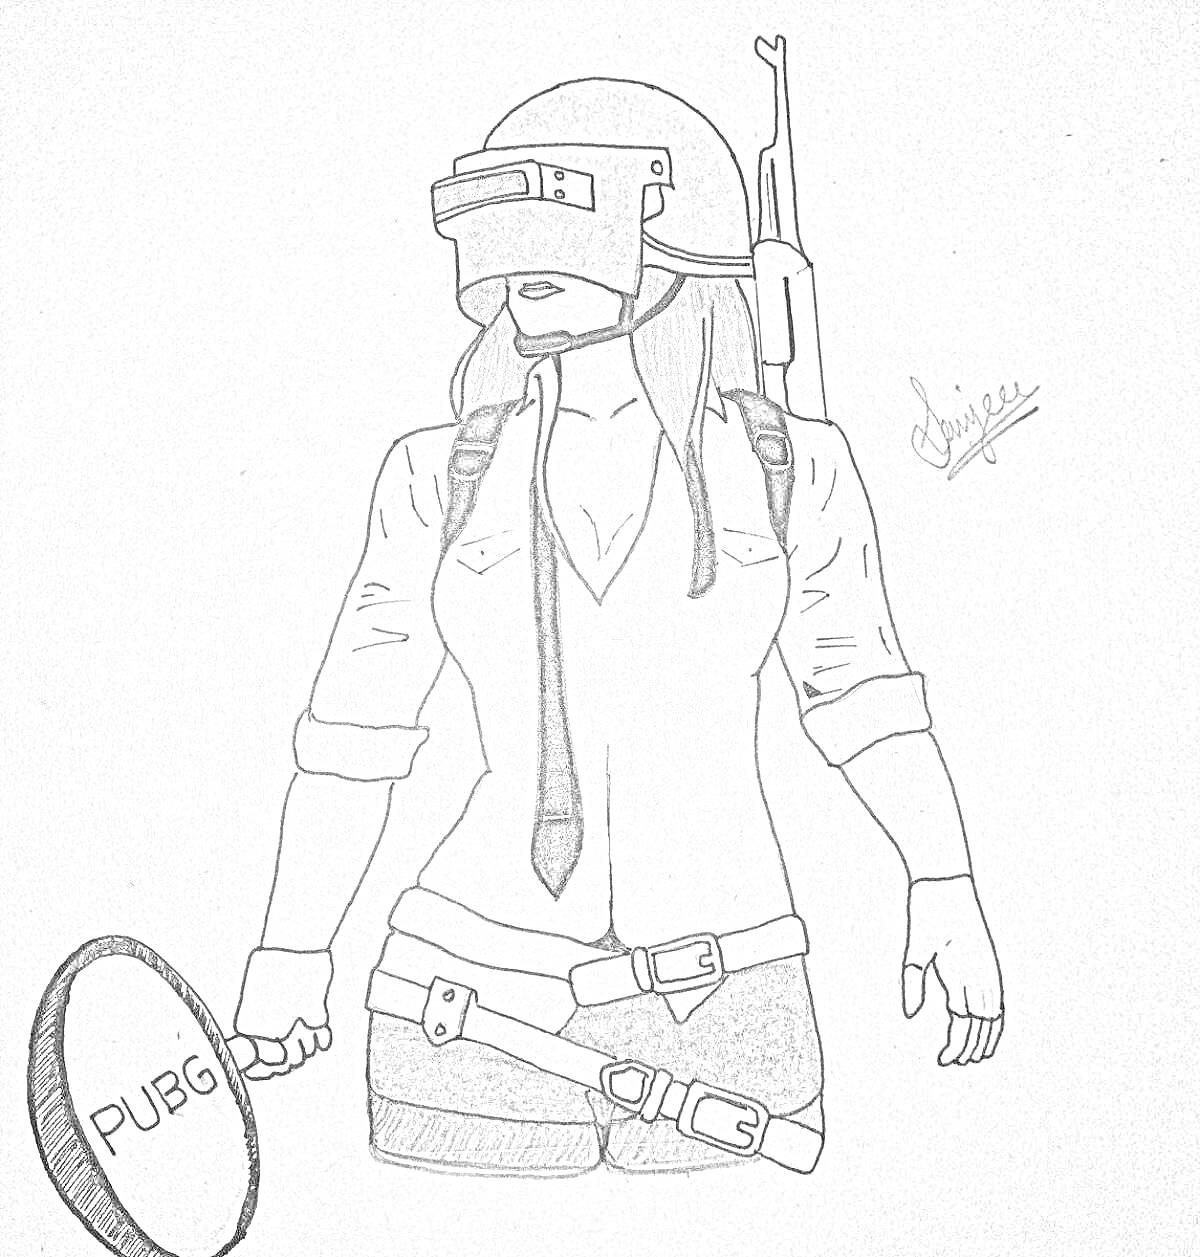 РаскраскаЧеловек в шлеме и сковородкой из PUBG, штурмовая винтовка за спиной, бронежилет и патронташ на поясе